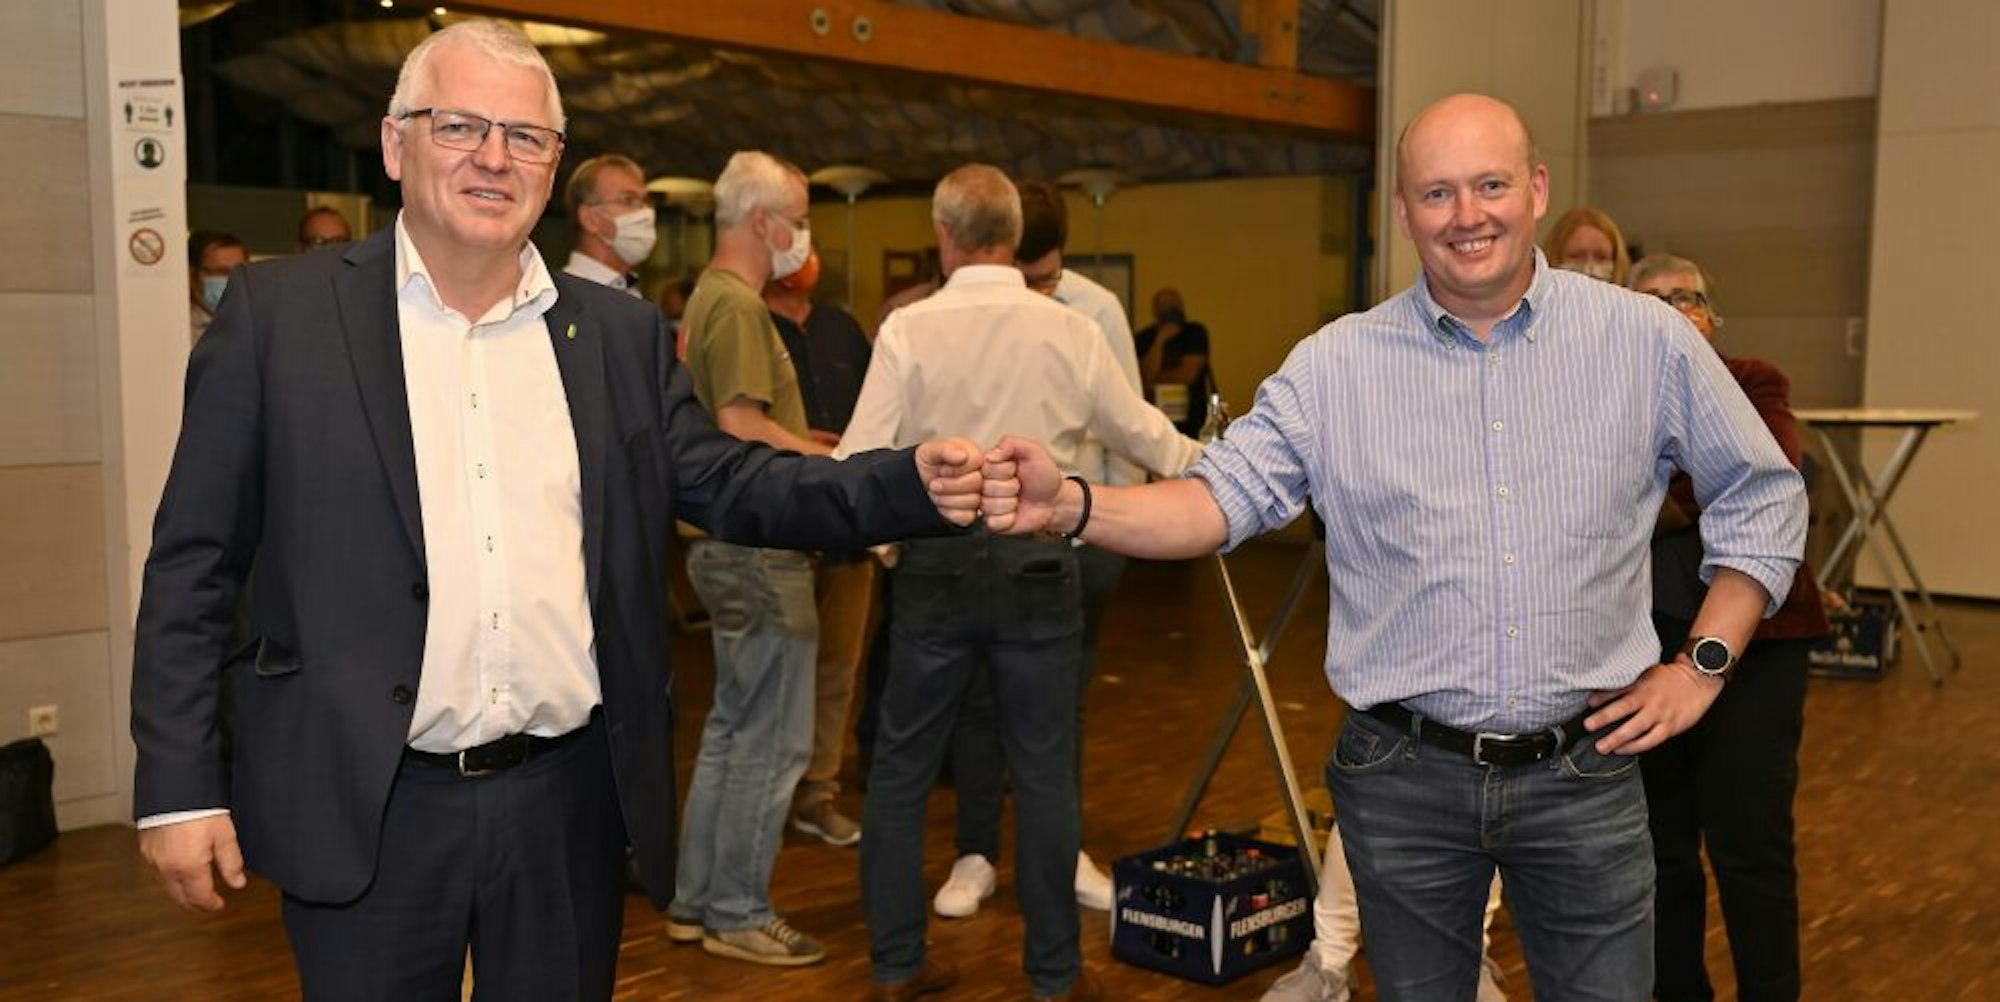 Corona-Gruß auf Abstand: Willi Heider (l.) und Marc Beer gehen in die Stichwahl am 27. September. Das kennen beide: Schon 2014 war dies die Konstellation.